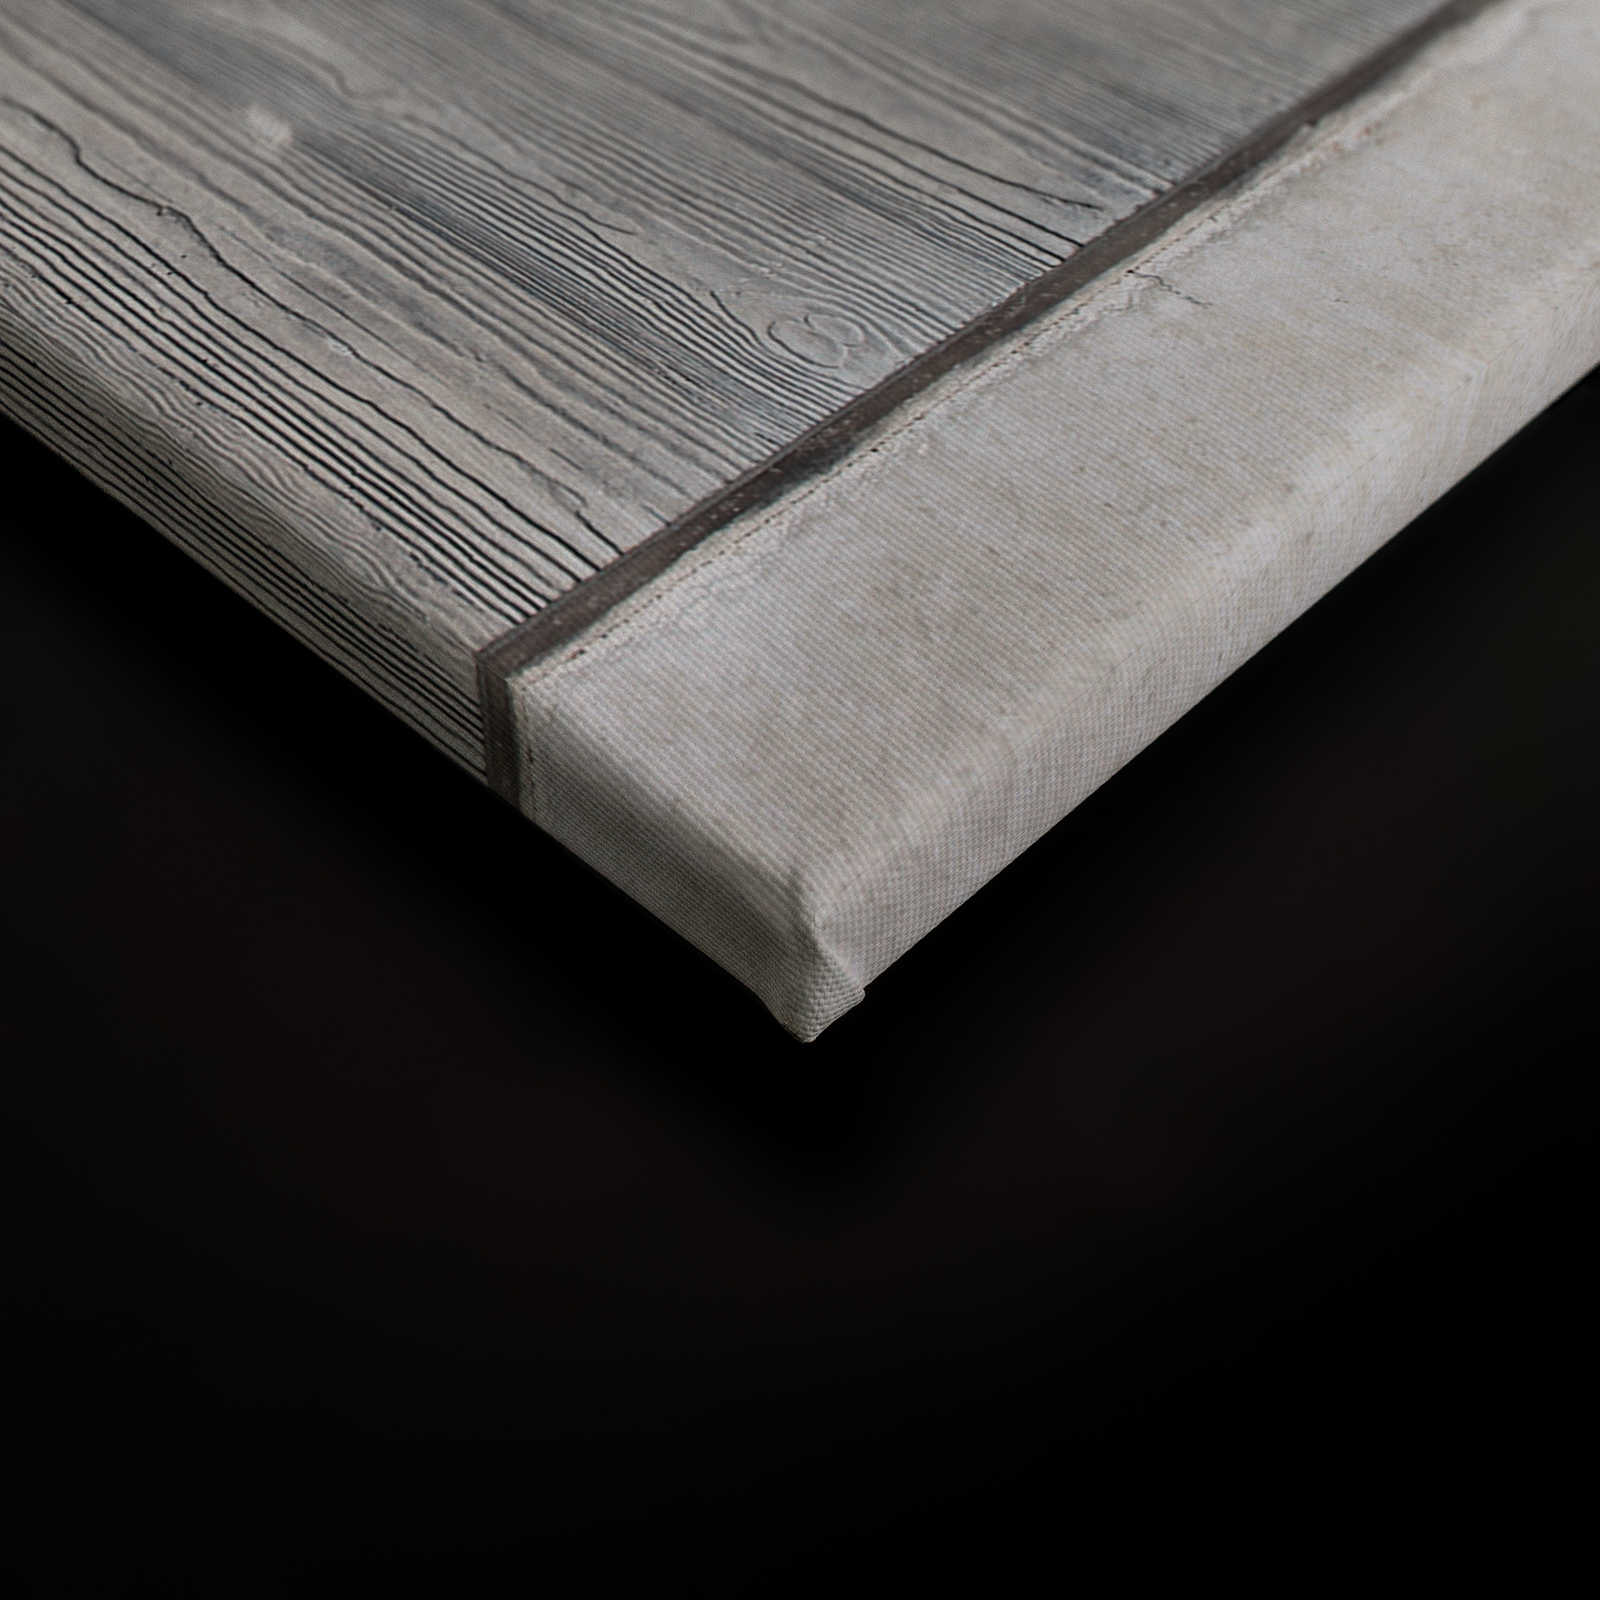             Betonplatten Leinwandbild mit Bretterschalung und Holzmaserung – 1,20 m x 0,80 m
        